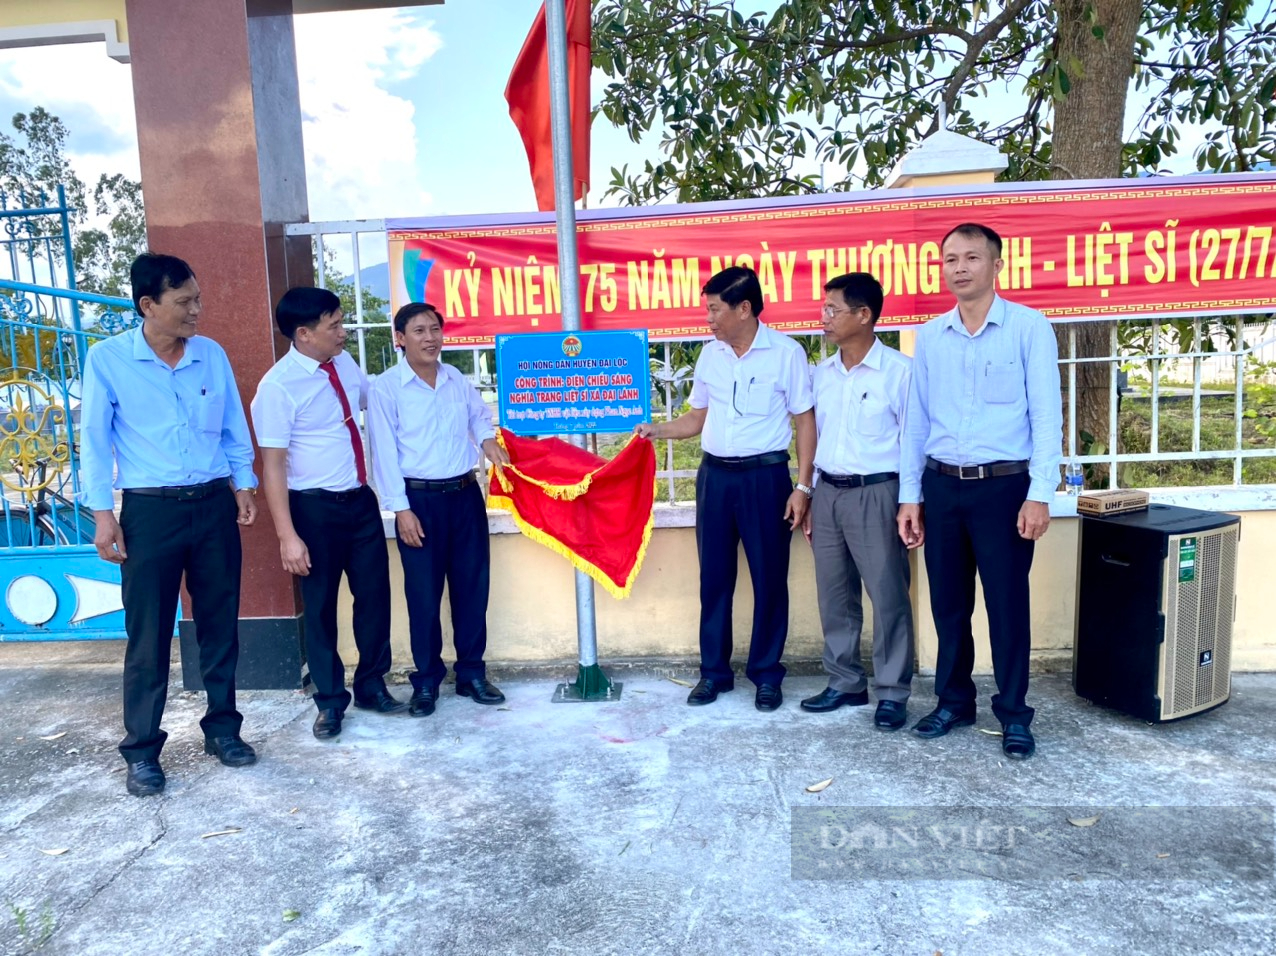 Quảng Nam: Hội Nông dân thắp sáng nơi ghi công các anh hùng liệt sĩ - Ảnh 1.